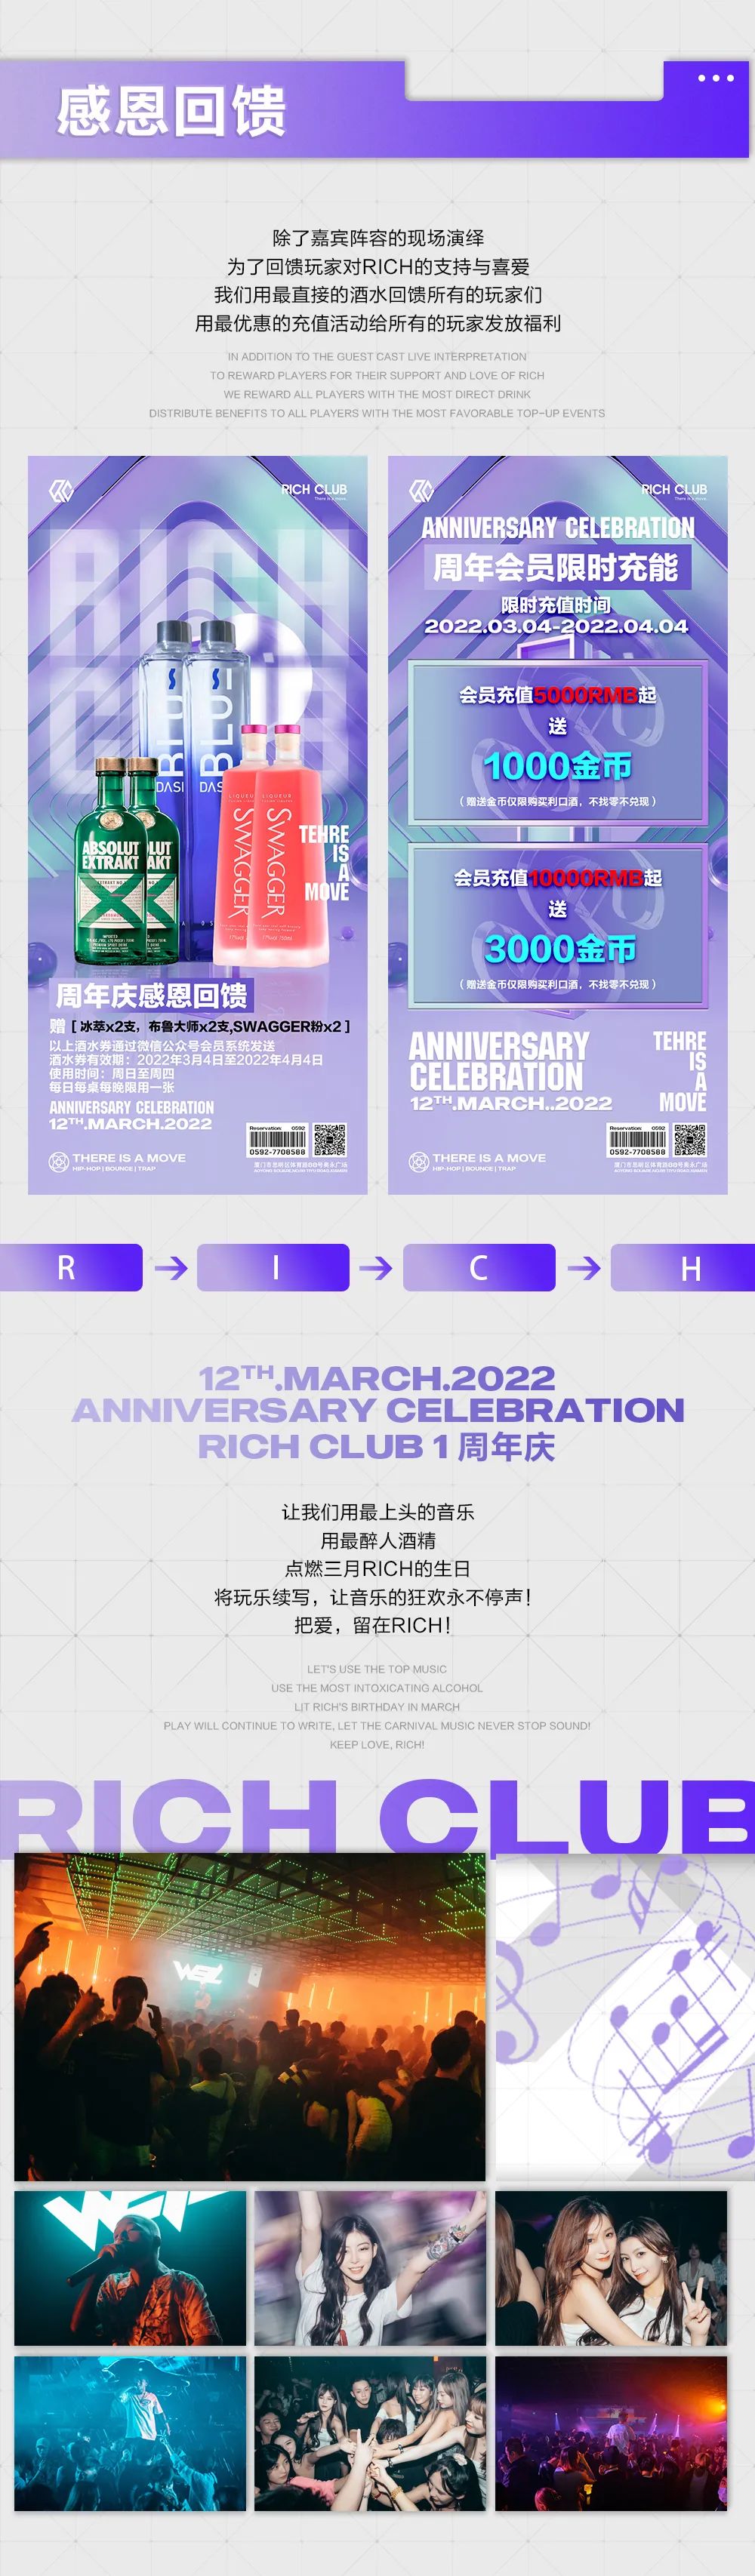 RICH LCUB | 2022.03.12 周年庆·续写玩乐新篇章-厦门Rich Club/富人俱乐部